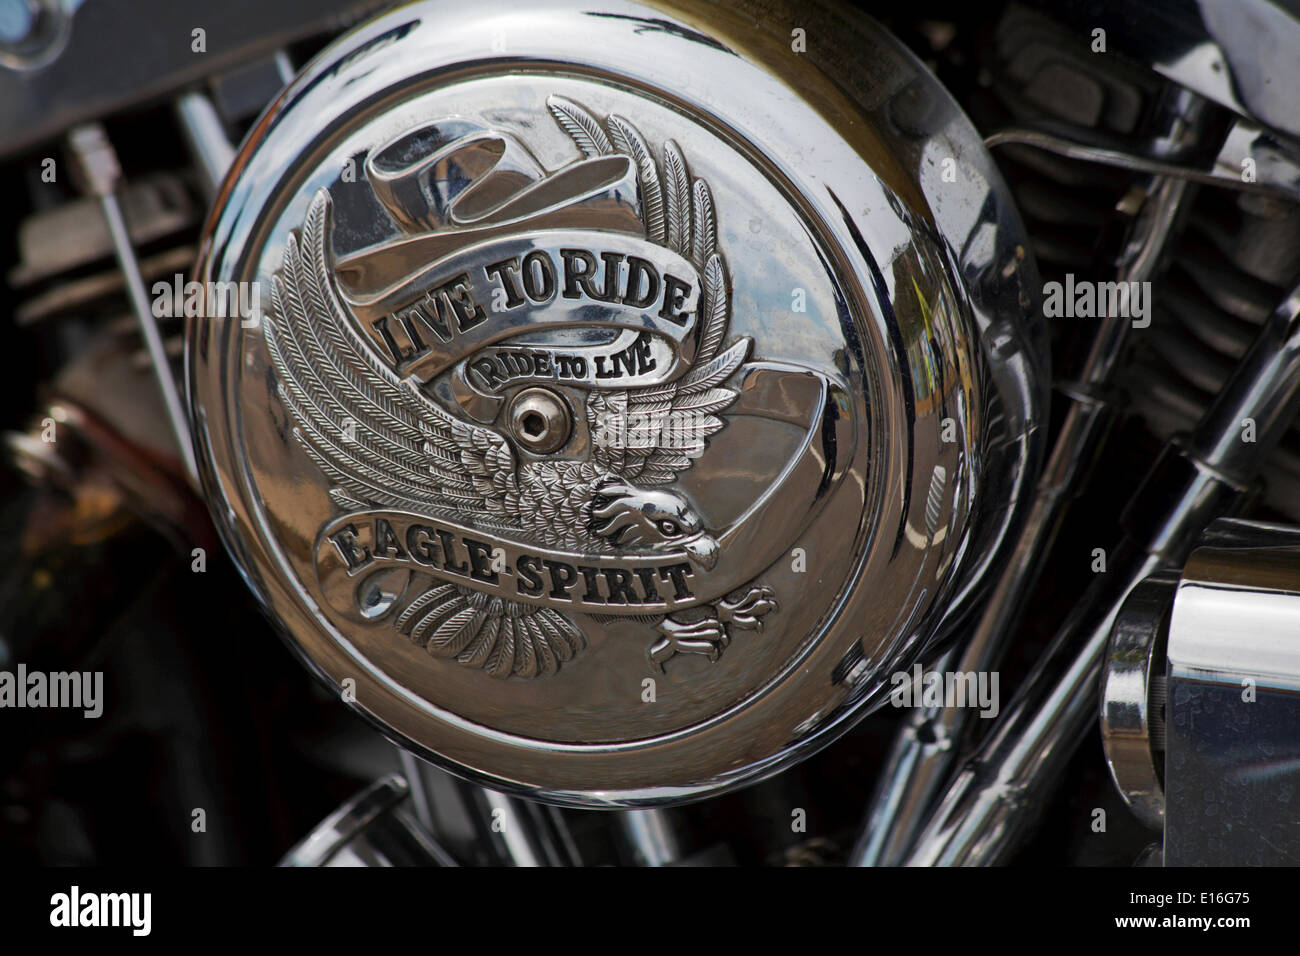 Eagle Bank Harley Davidson Off 69 Medpharmres Com